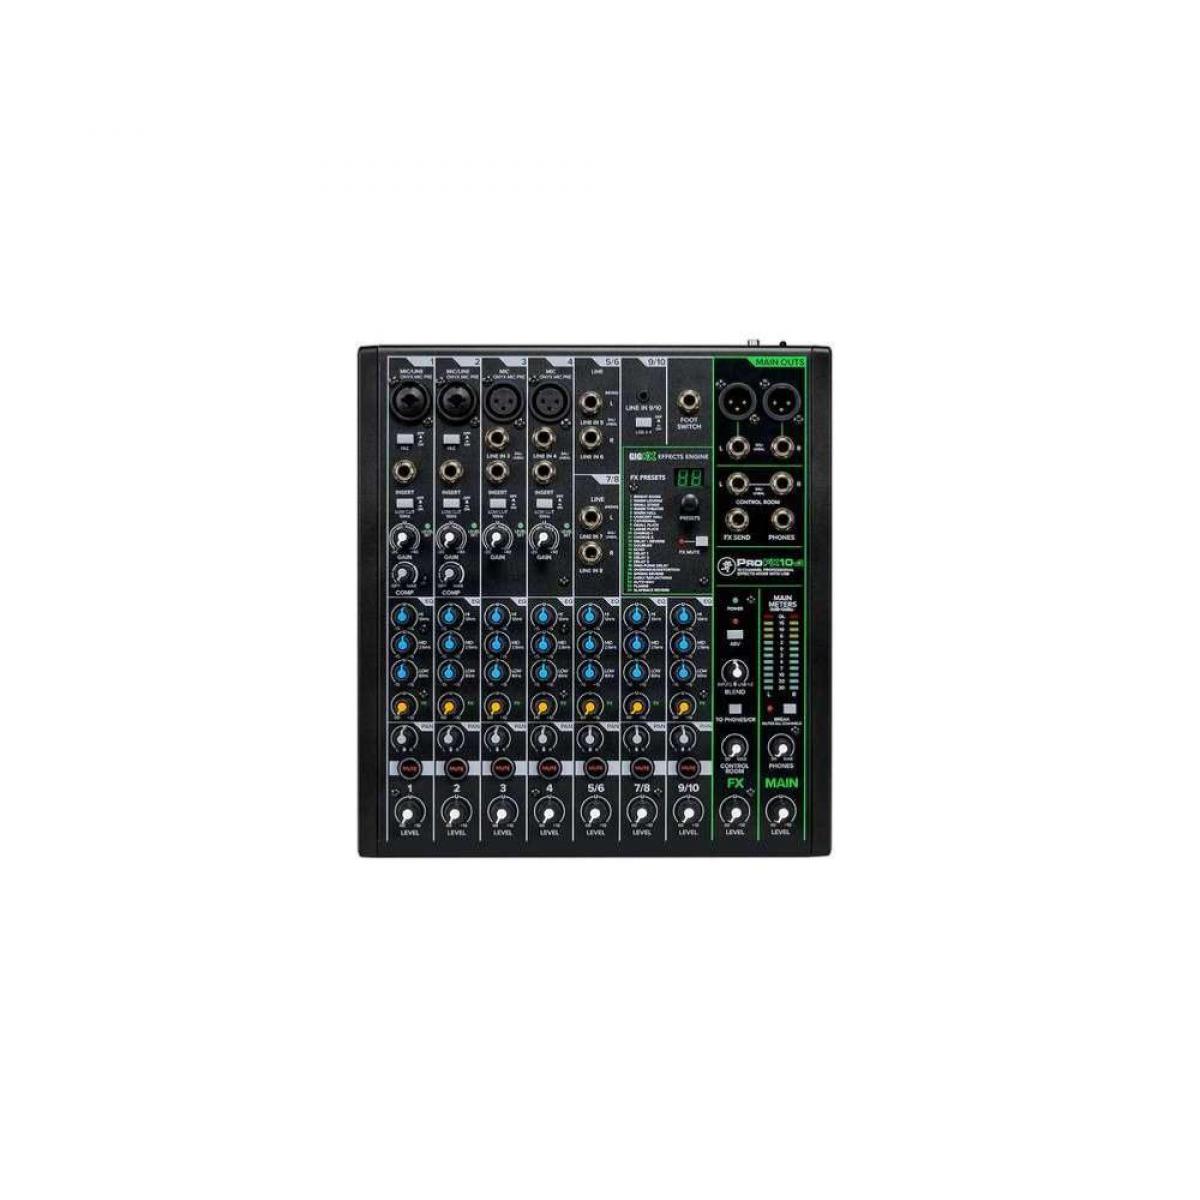 Mackie - MACKIE - SMK PROFX12V3 - Console de mixage analogique - USB 12 canaux + effets - Consoles de mixage